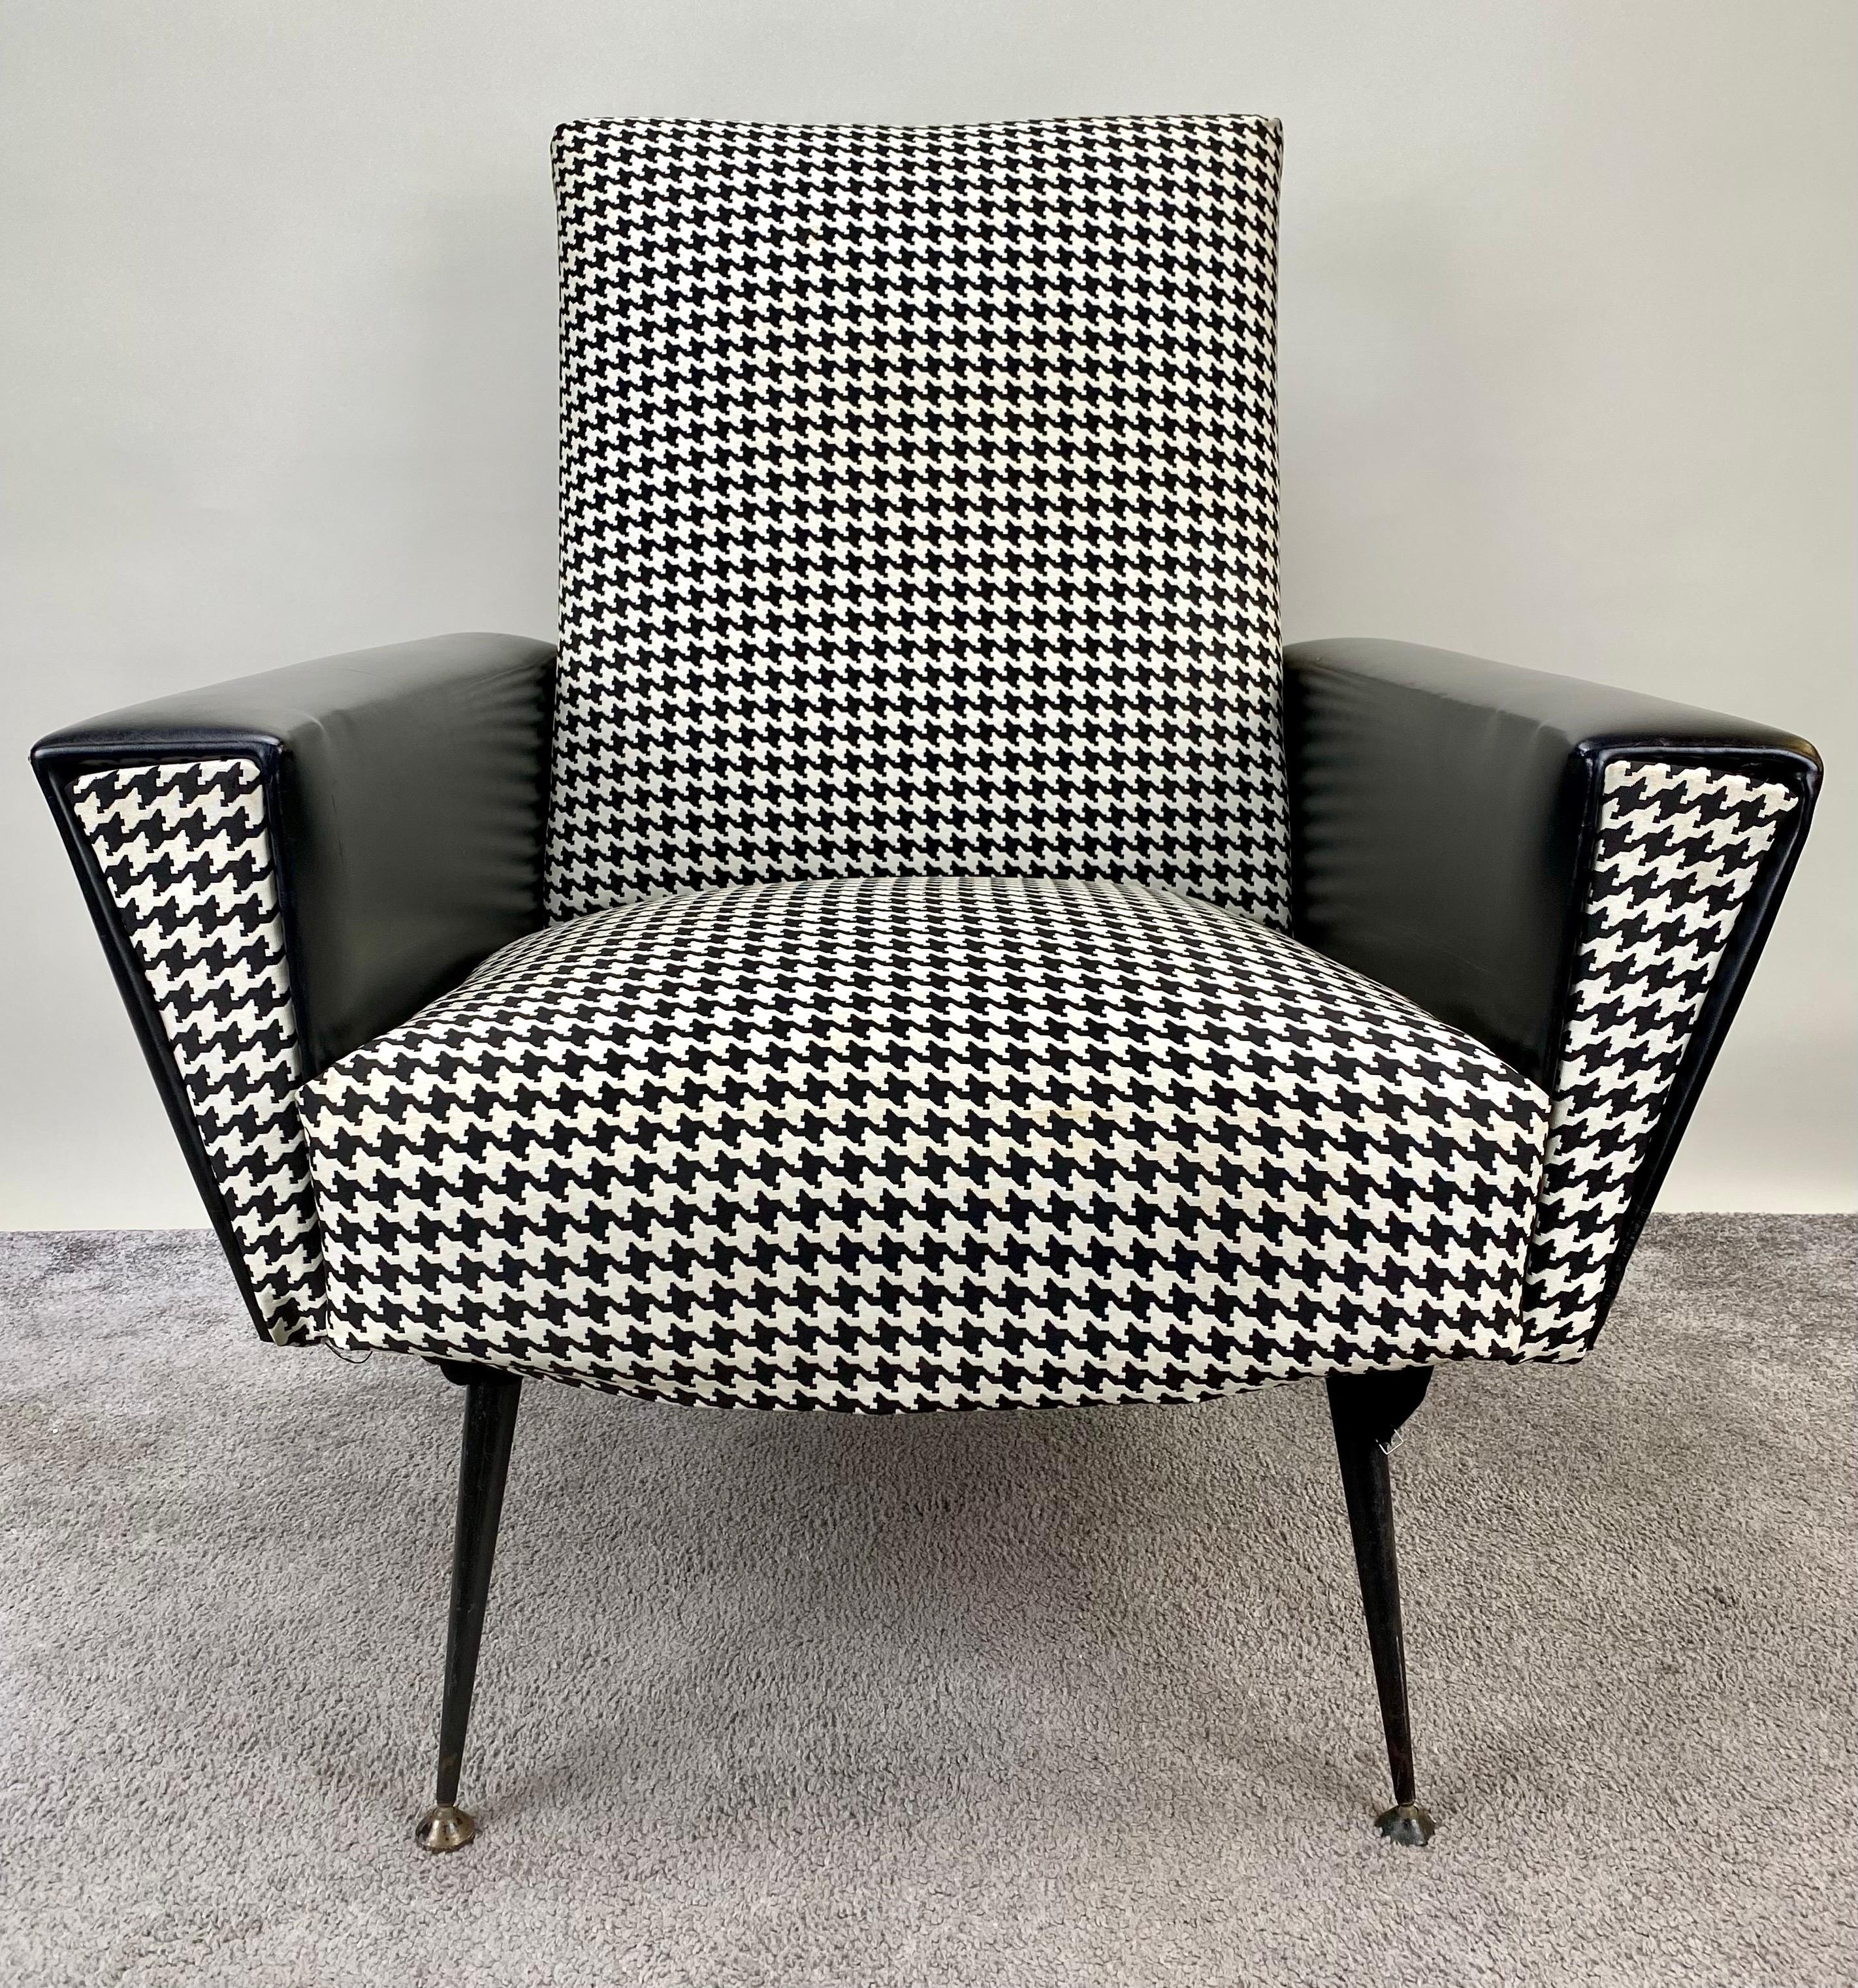 Ce fauteuil noir et blanc des années 1960, nouvellement tapissé, est l'endroit où vous allez pour vous détendre, débrancher et vous relaxer. Les accoudoirs sont recouverts de cuir noir et il présente un dossier solide, une assise profonde et des